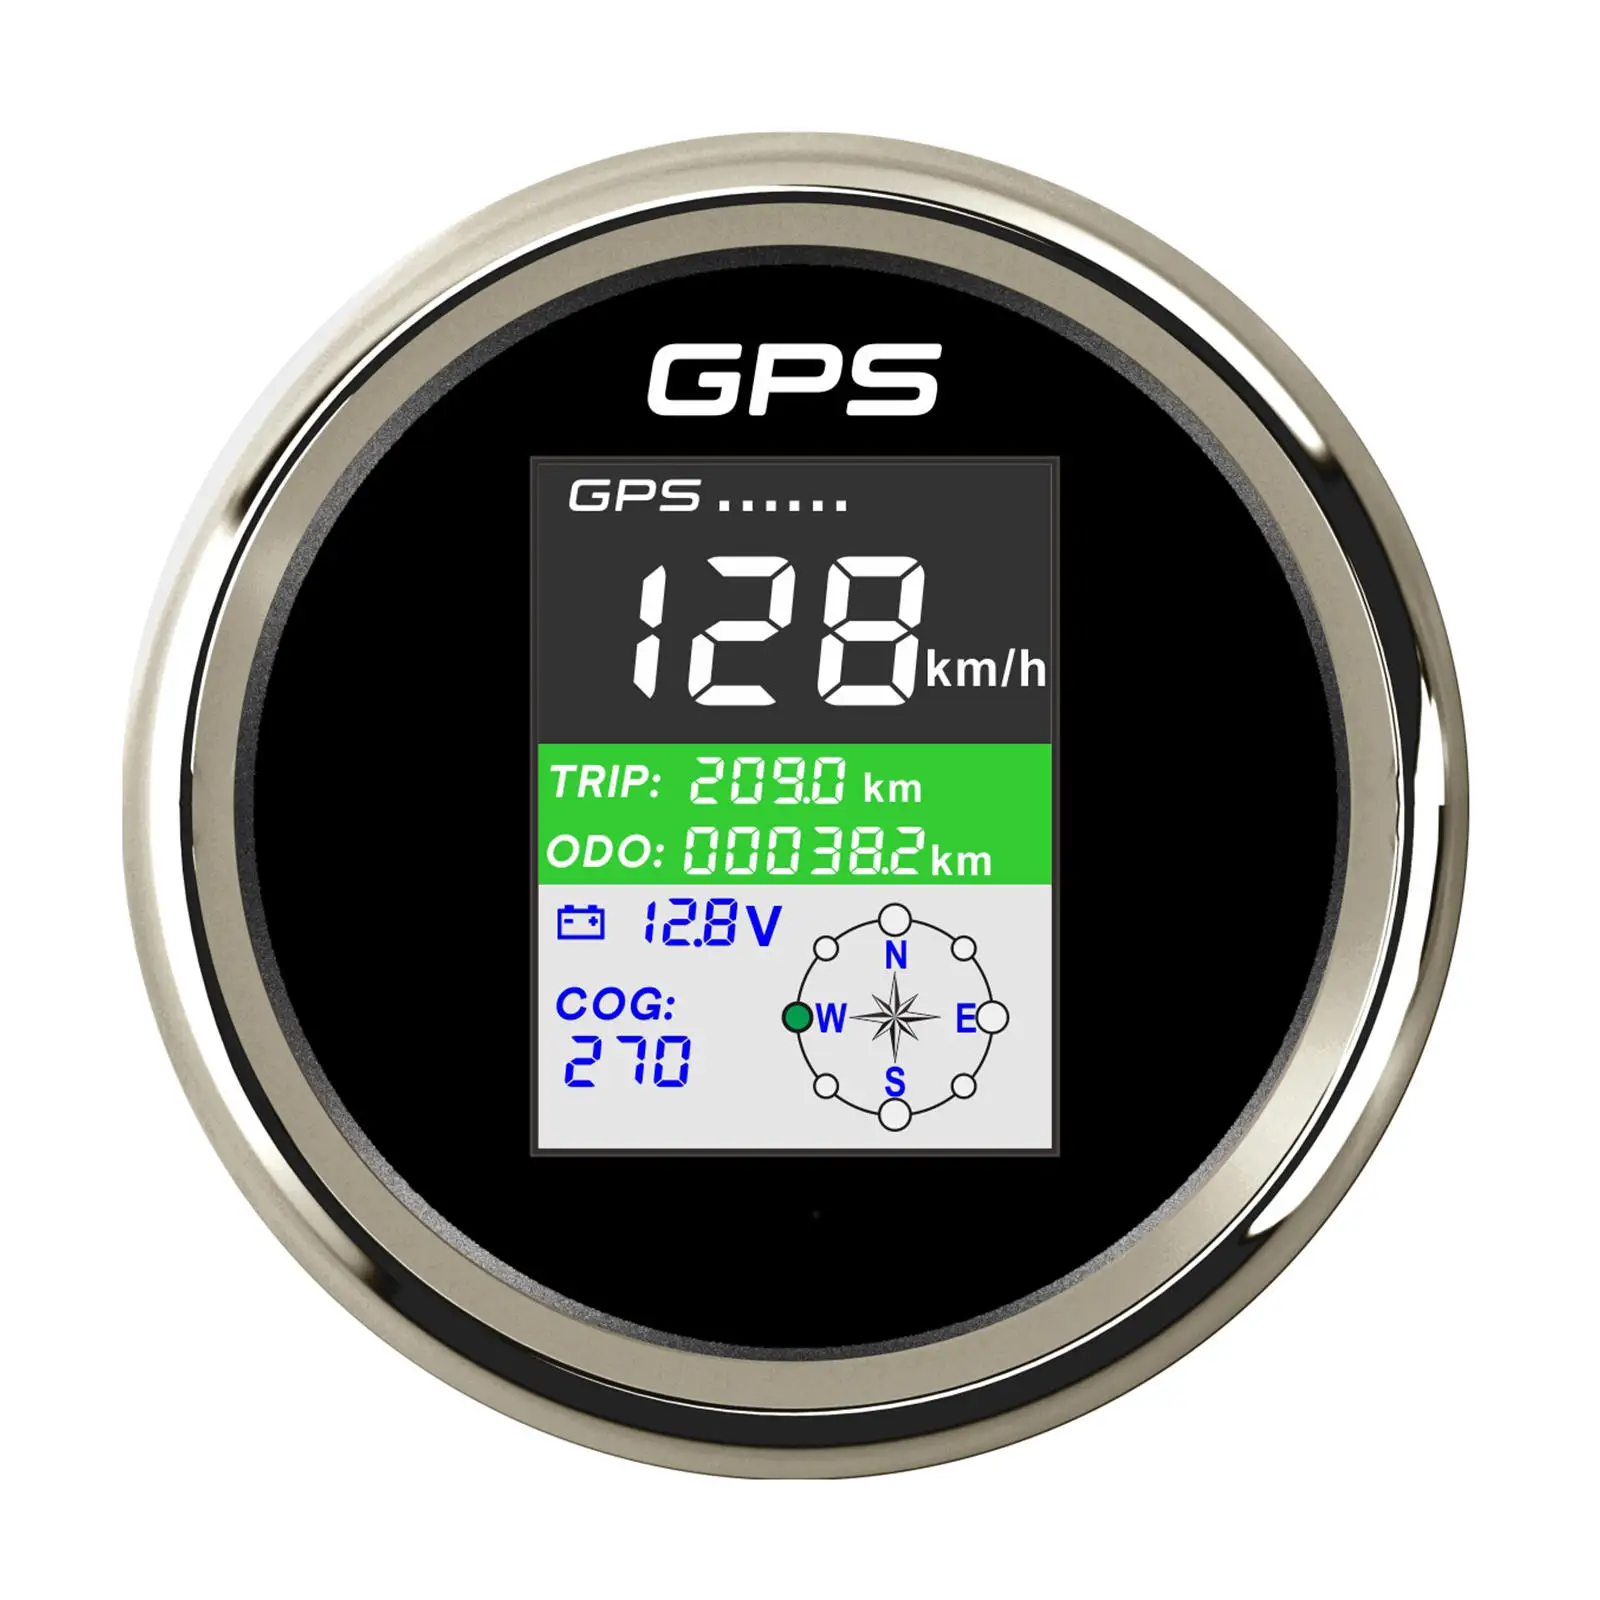 Stainless Steel GPS Speedometer Gauge LCD Display PLG3-BS-GPS 85mm for Boat